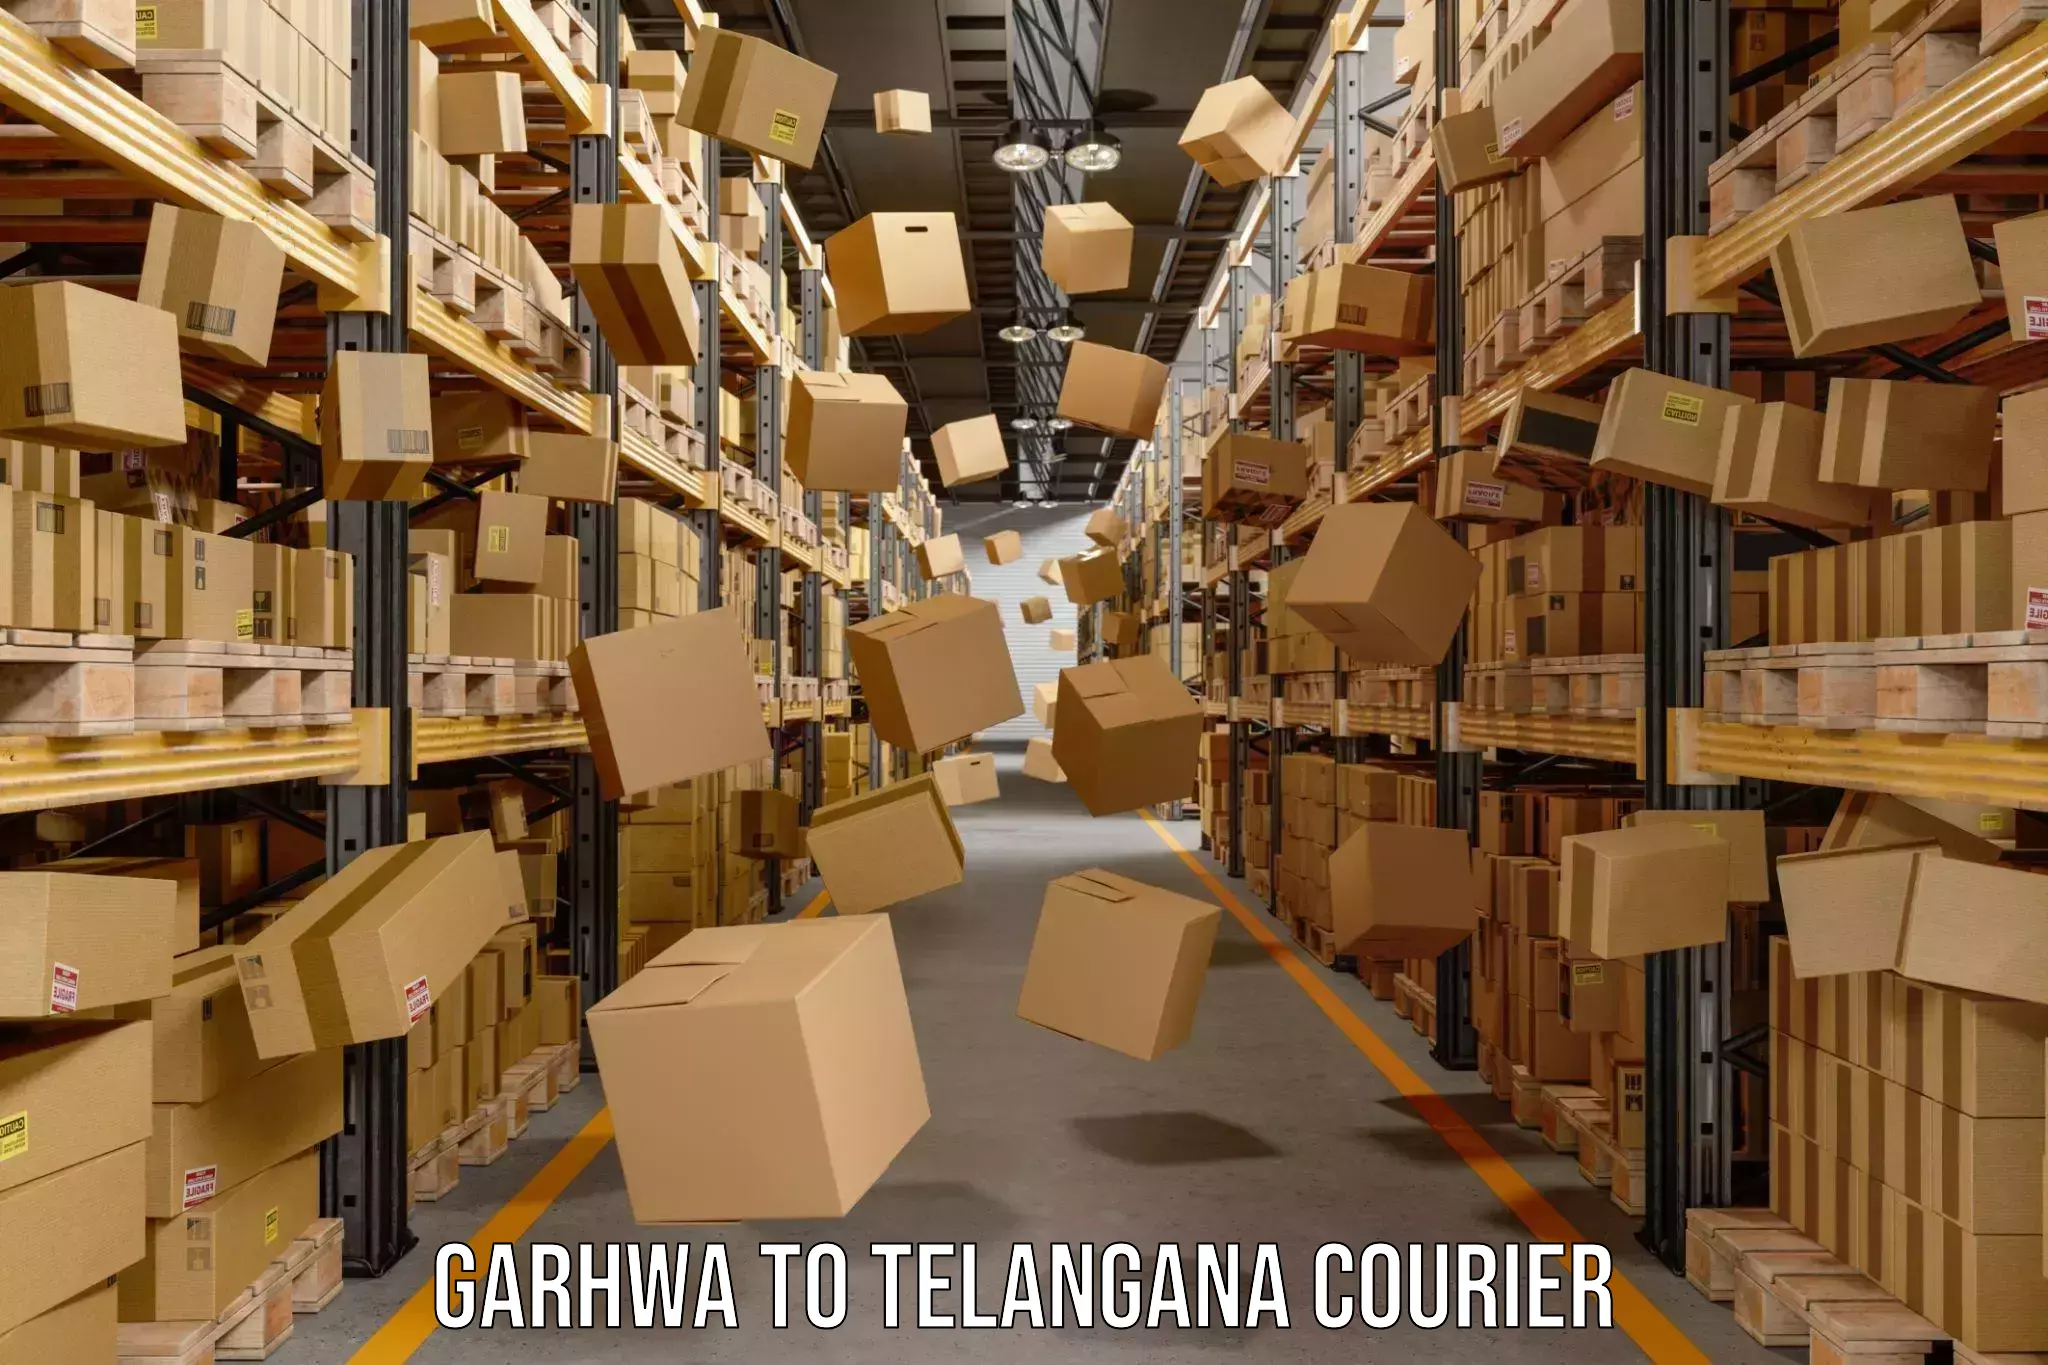 Courier service comparison in Garhwa to Vikarabad